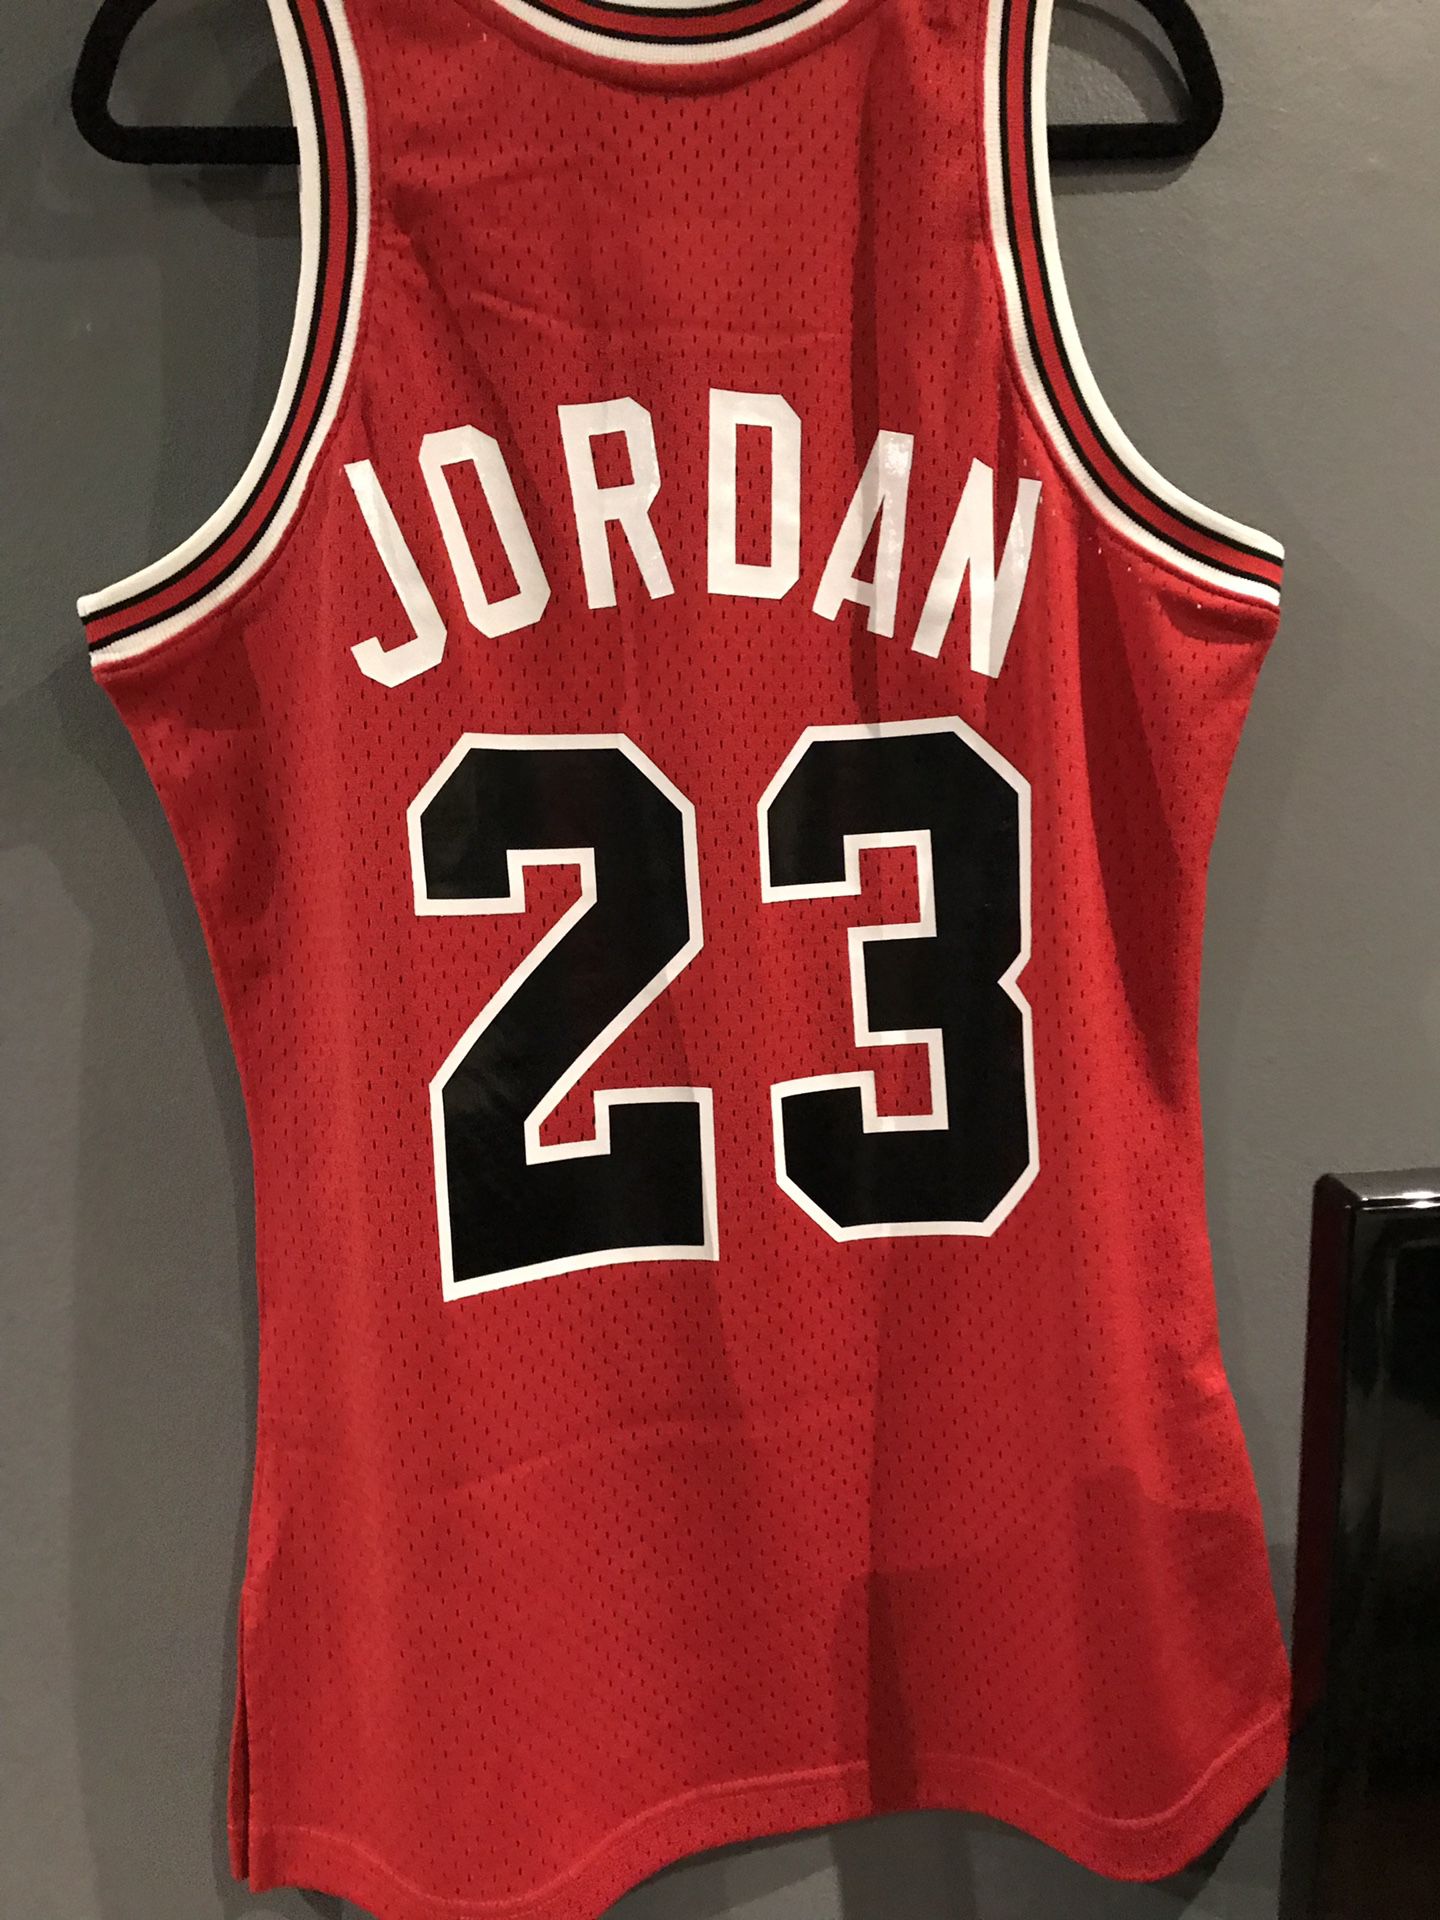 Authentic Jordan Jersey for Sale in Flat Rock, MI - OfferUp